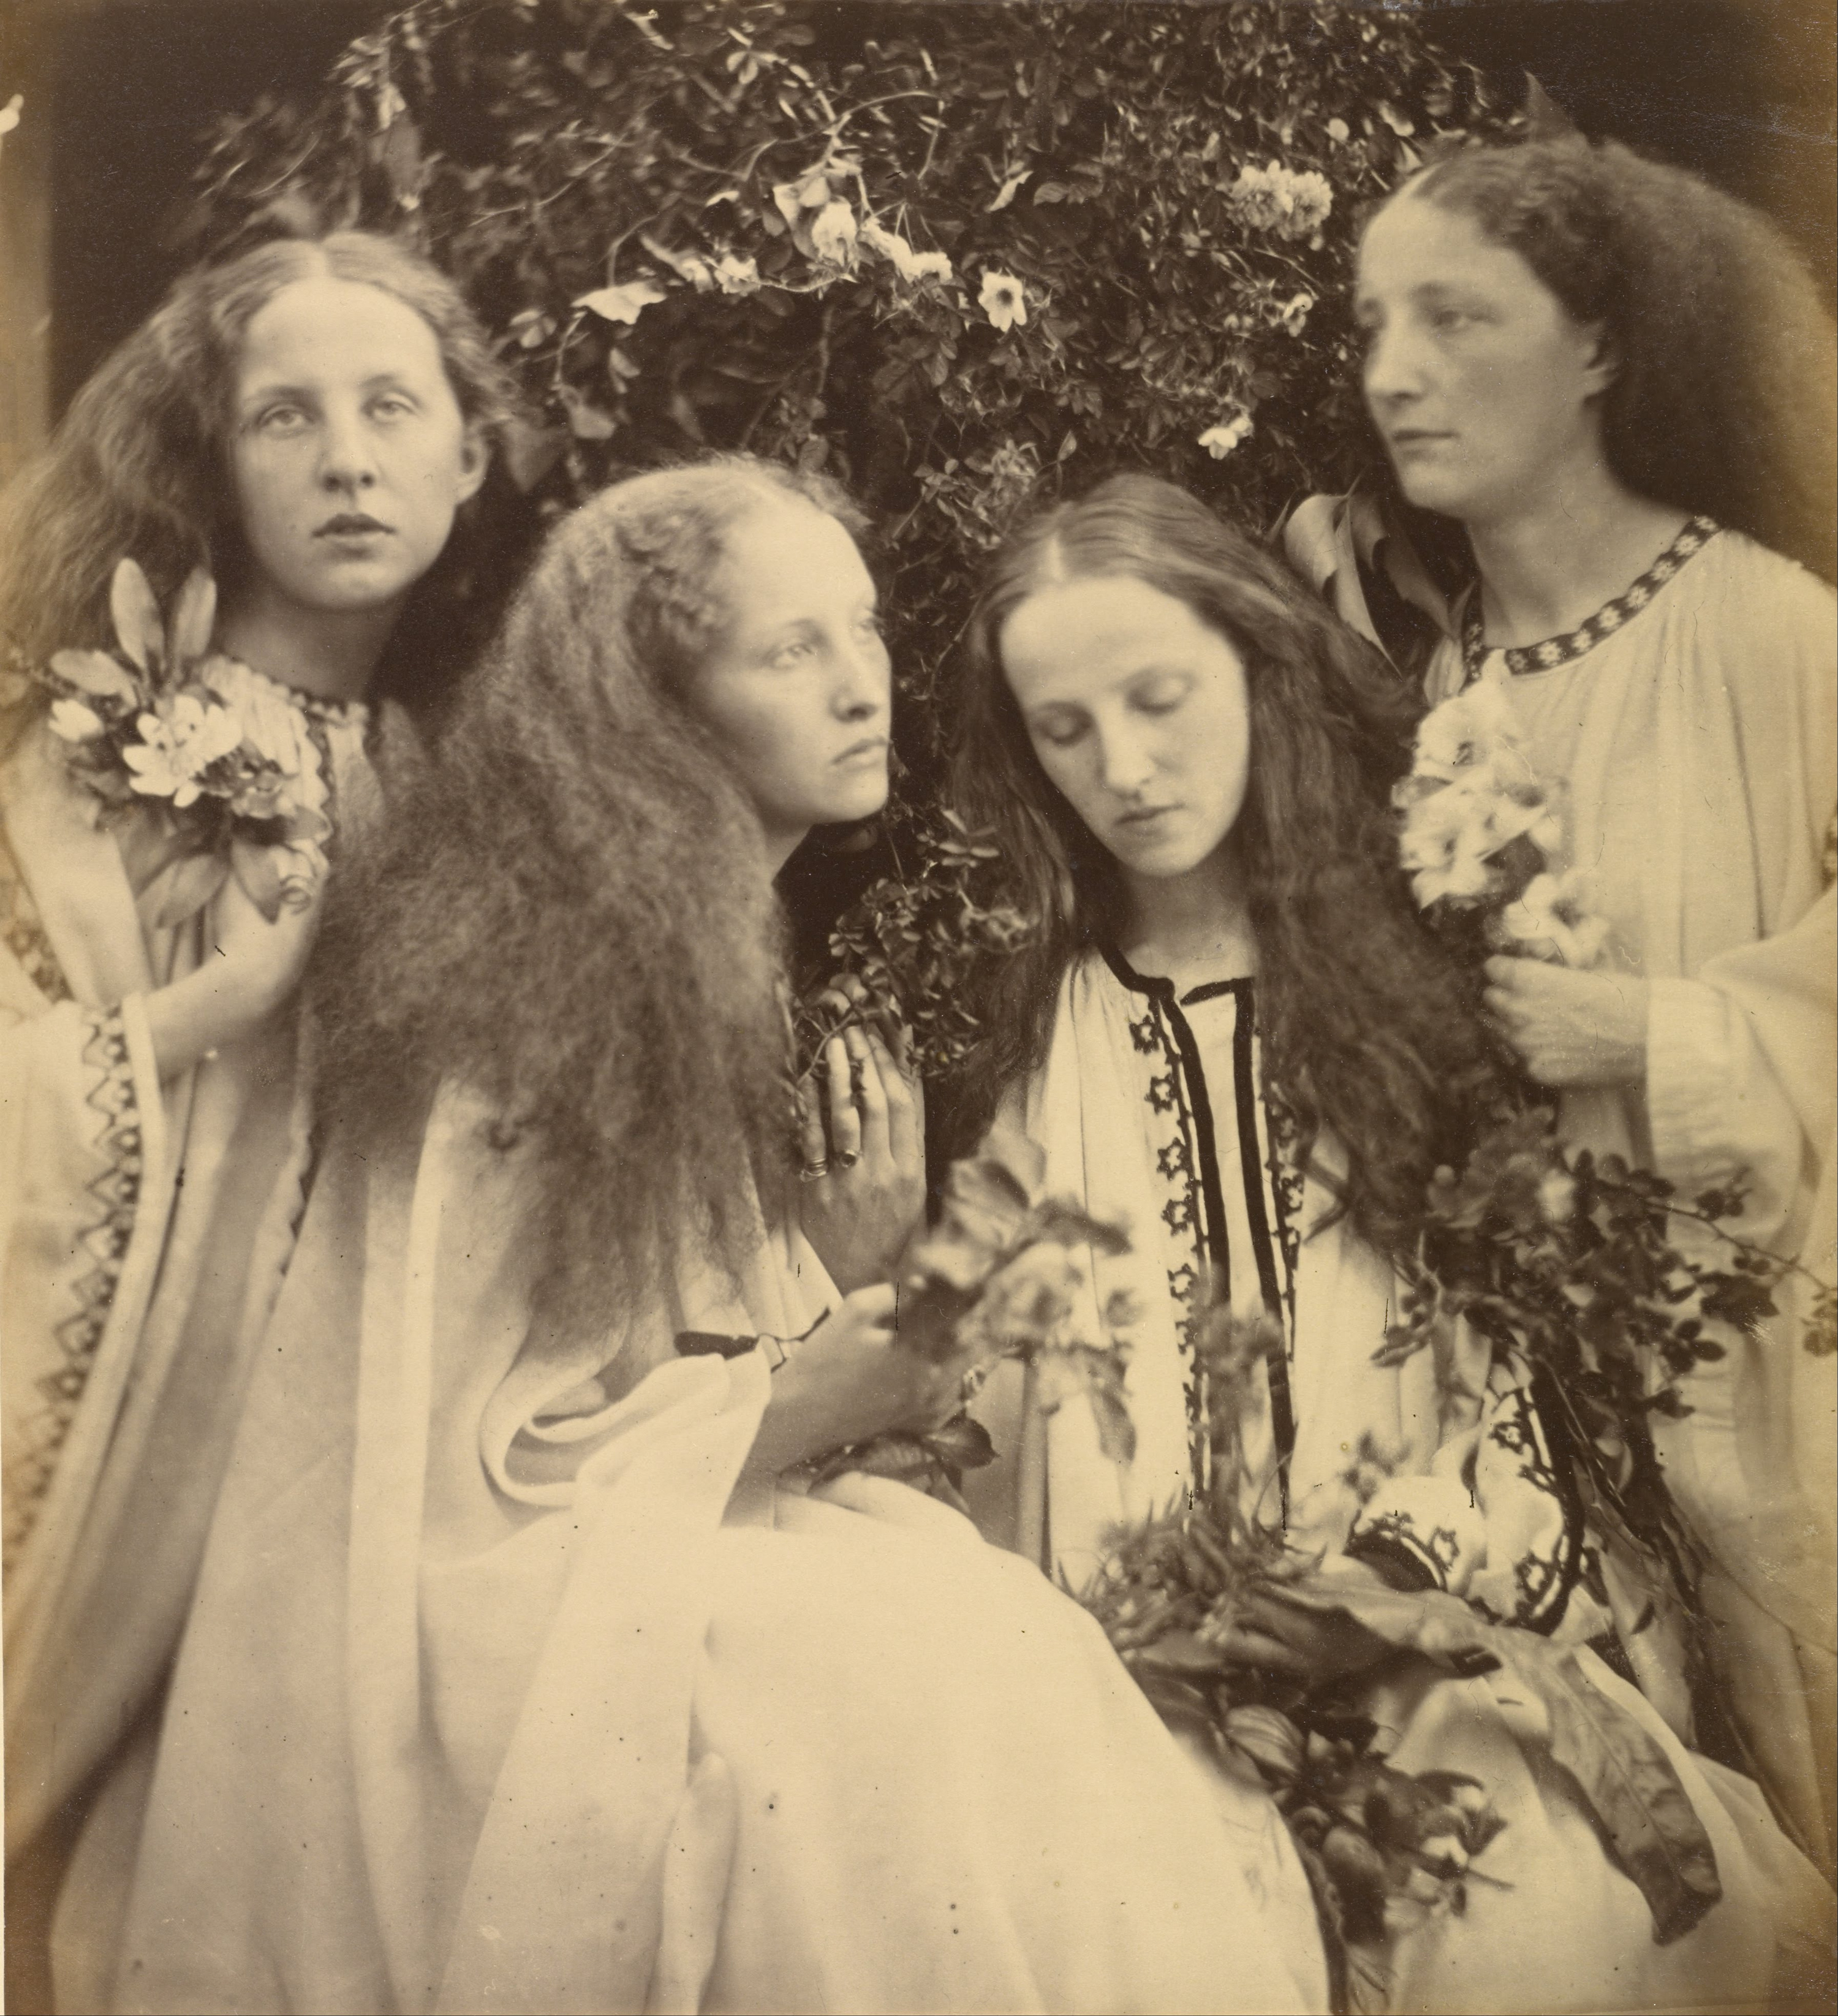 Le jardin de roses des filles by Julia Margaret Cameron - June 1868 Musée J.Paul Getty